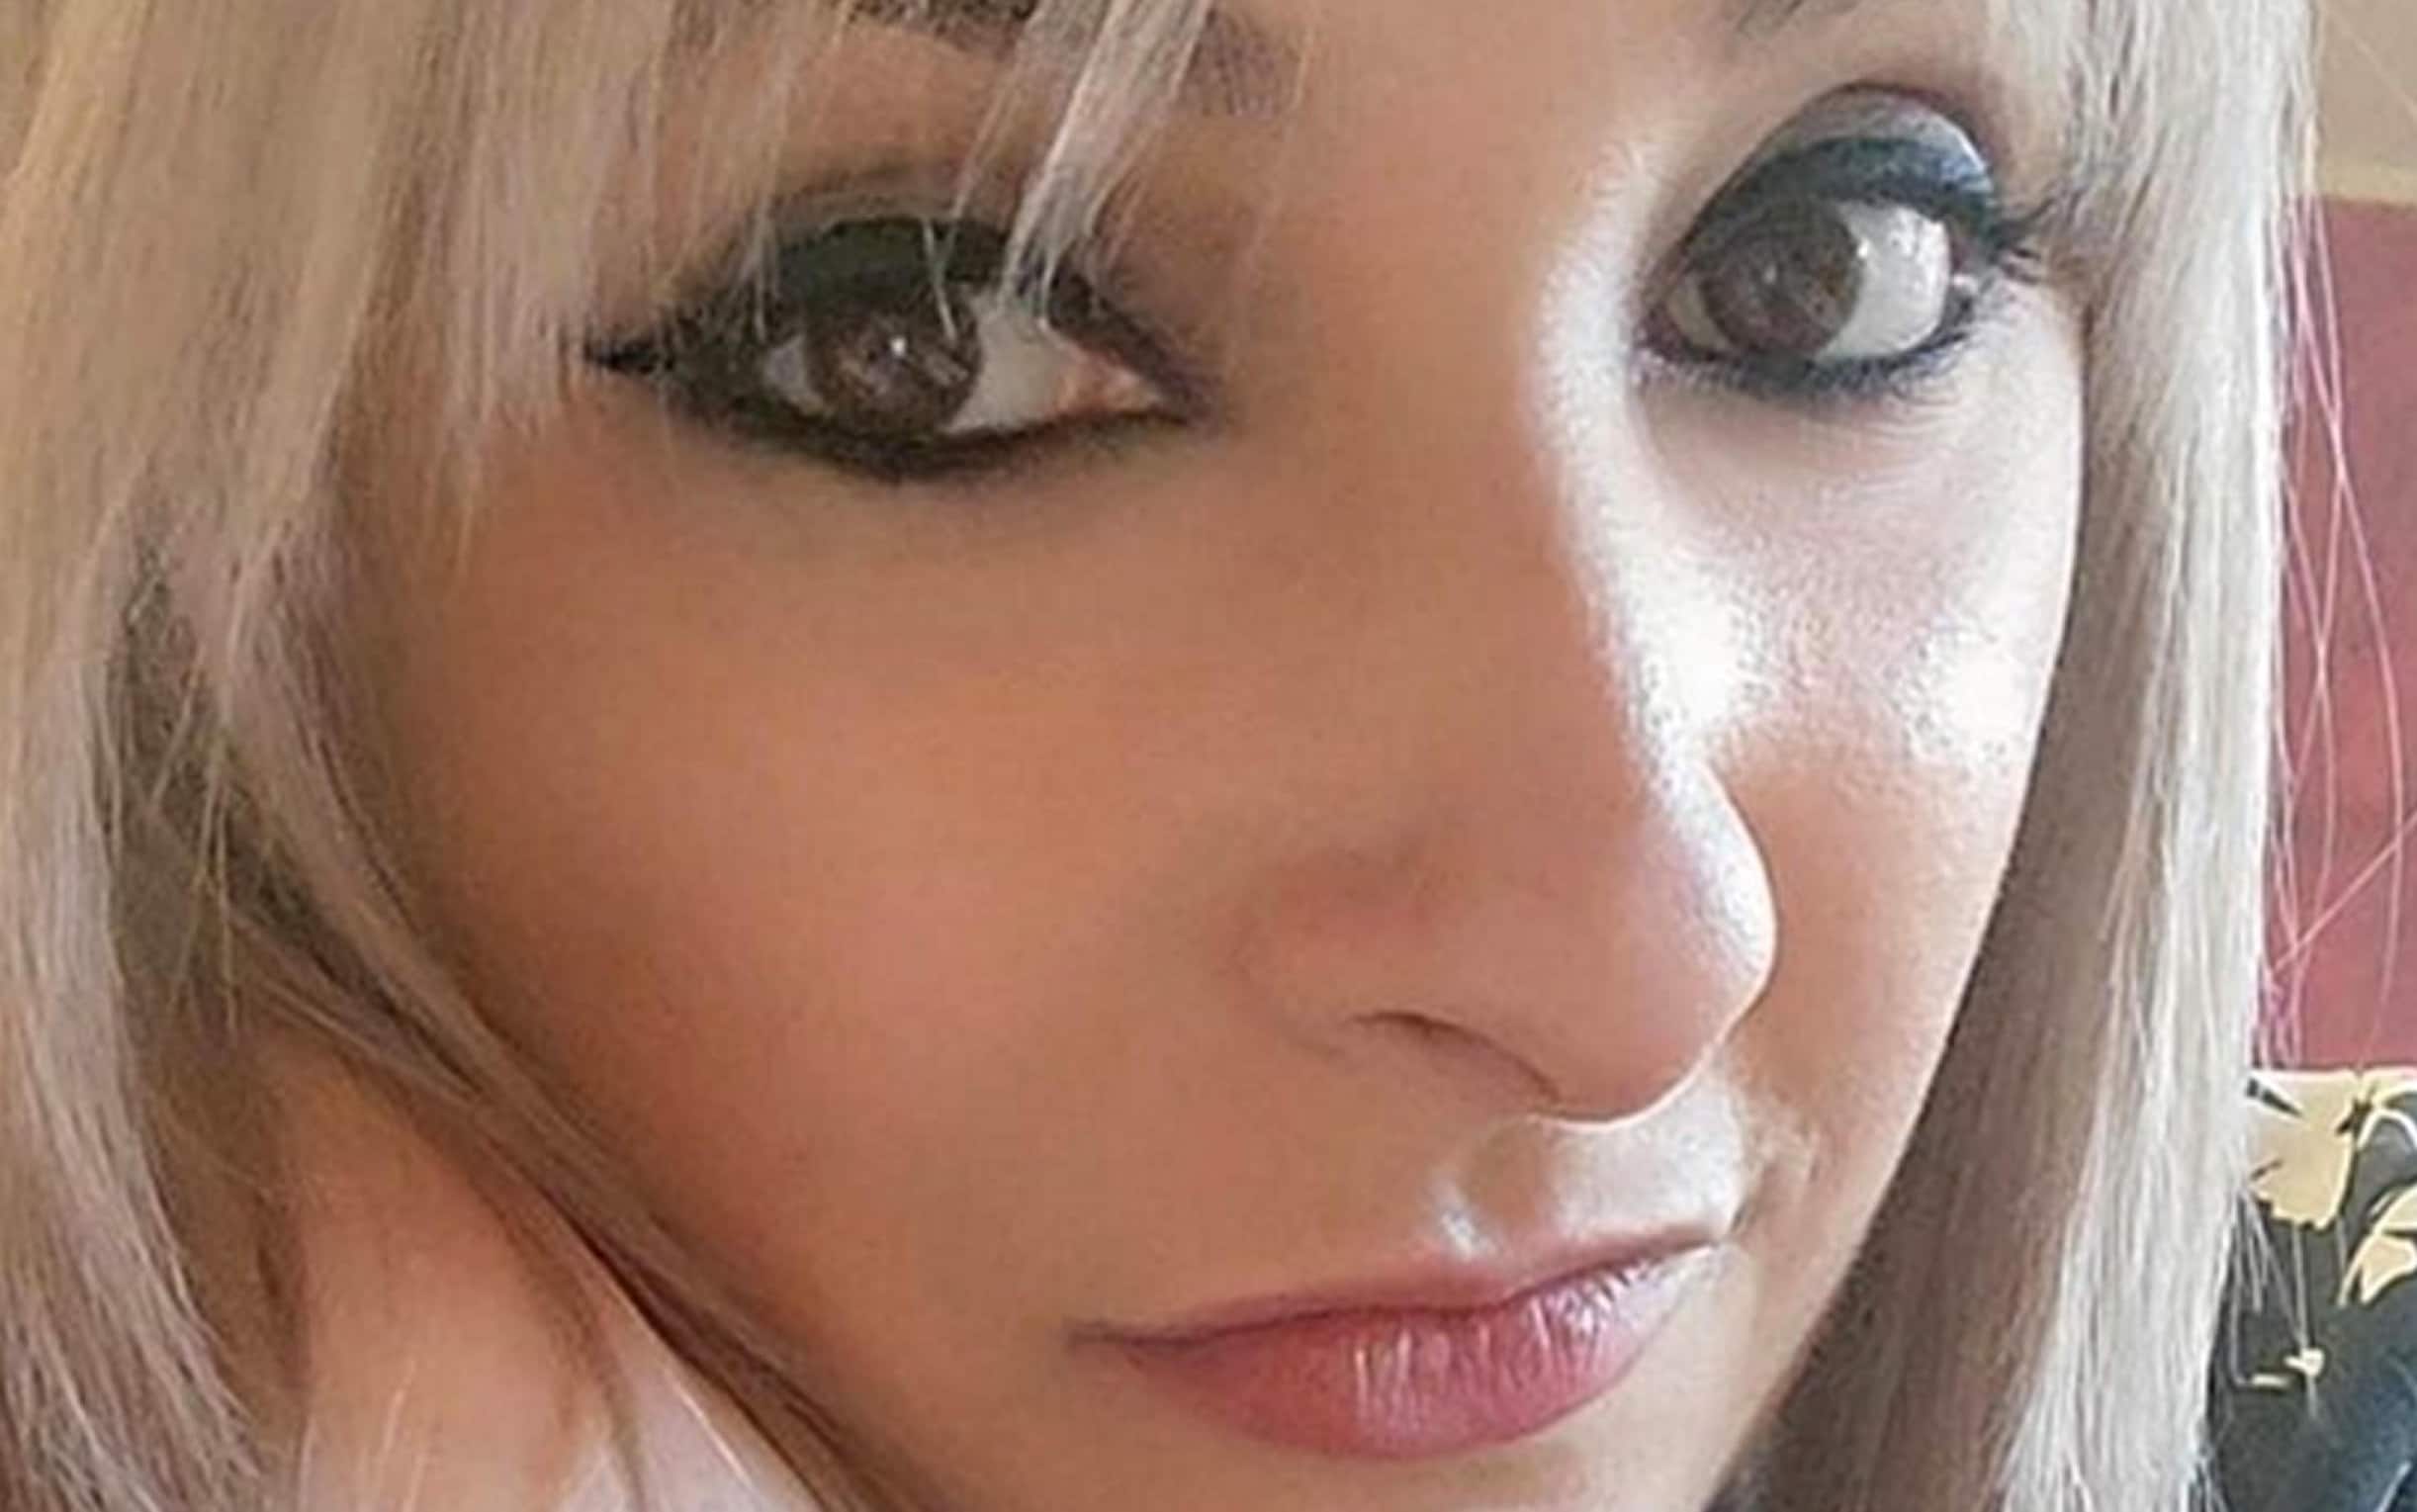 Alice Neri, la donna di 32 anni, trovata morta carbonizzata dentro un'auto a Concordia (Modena), in una immagine tratta da Facebook. FACEBOOK ALICE NERI +++ATTENZIONE LA FOTO NON PUO' ESSERE PUBBLICATA O RIPRODOTTA SENZA L'AUTORIZZAZIONE DELLA FONTE DI ORIGINE CUI SI RINVIA+++ (NPK)